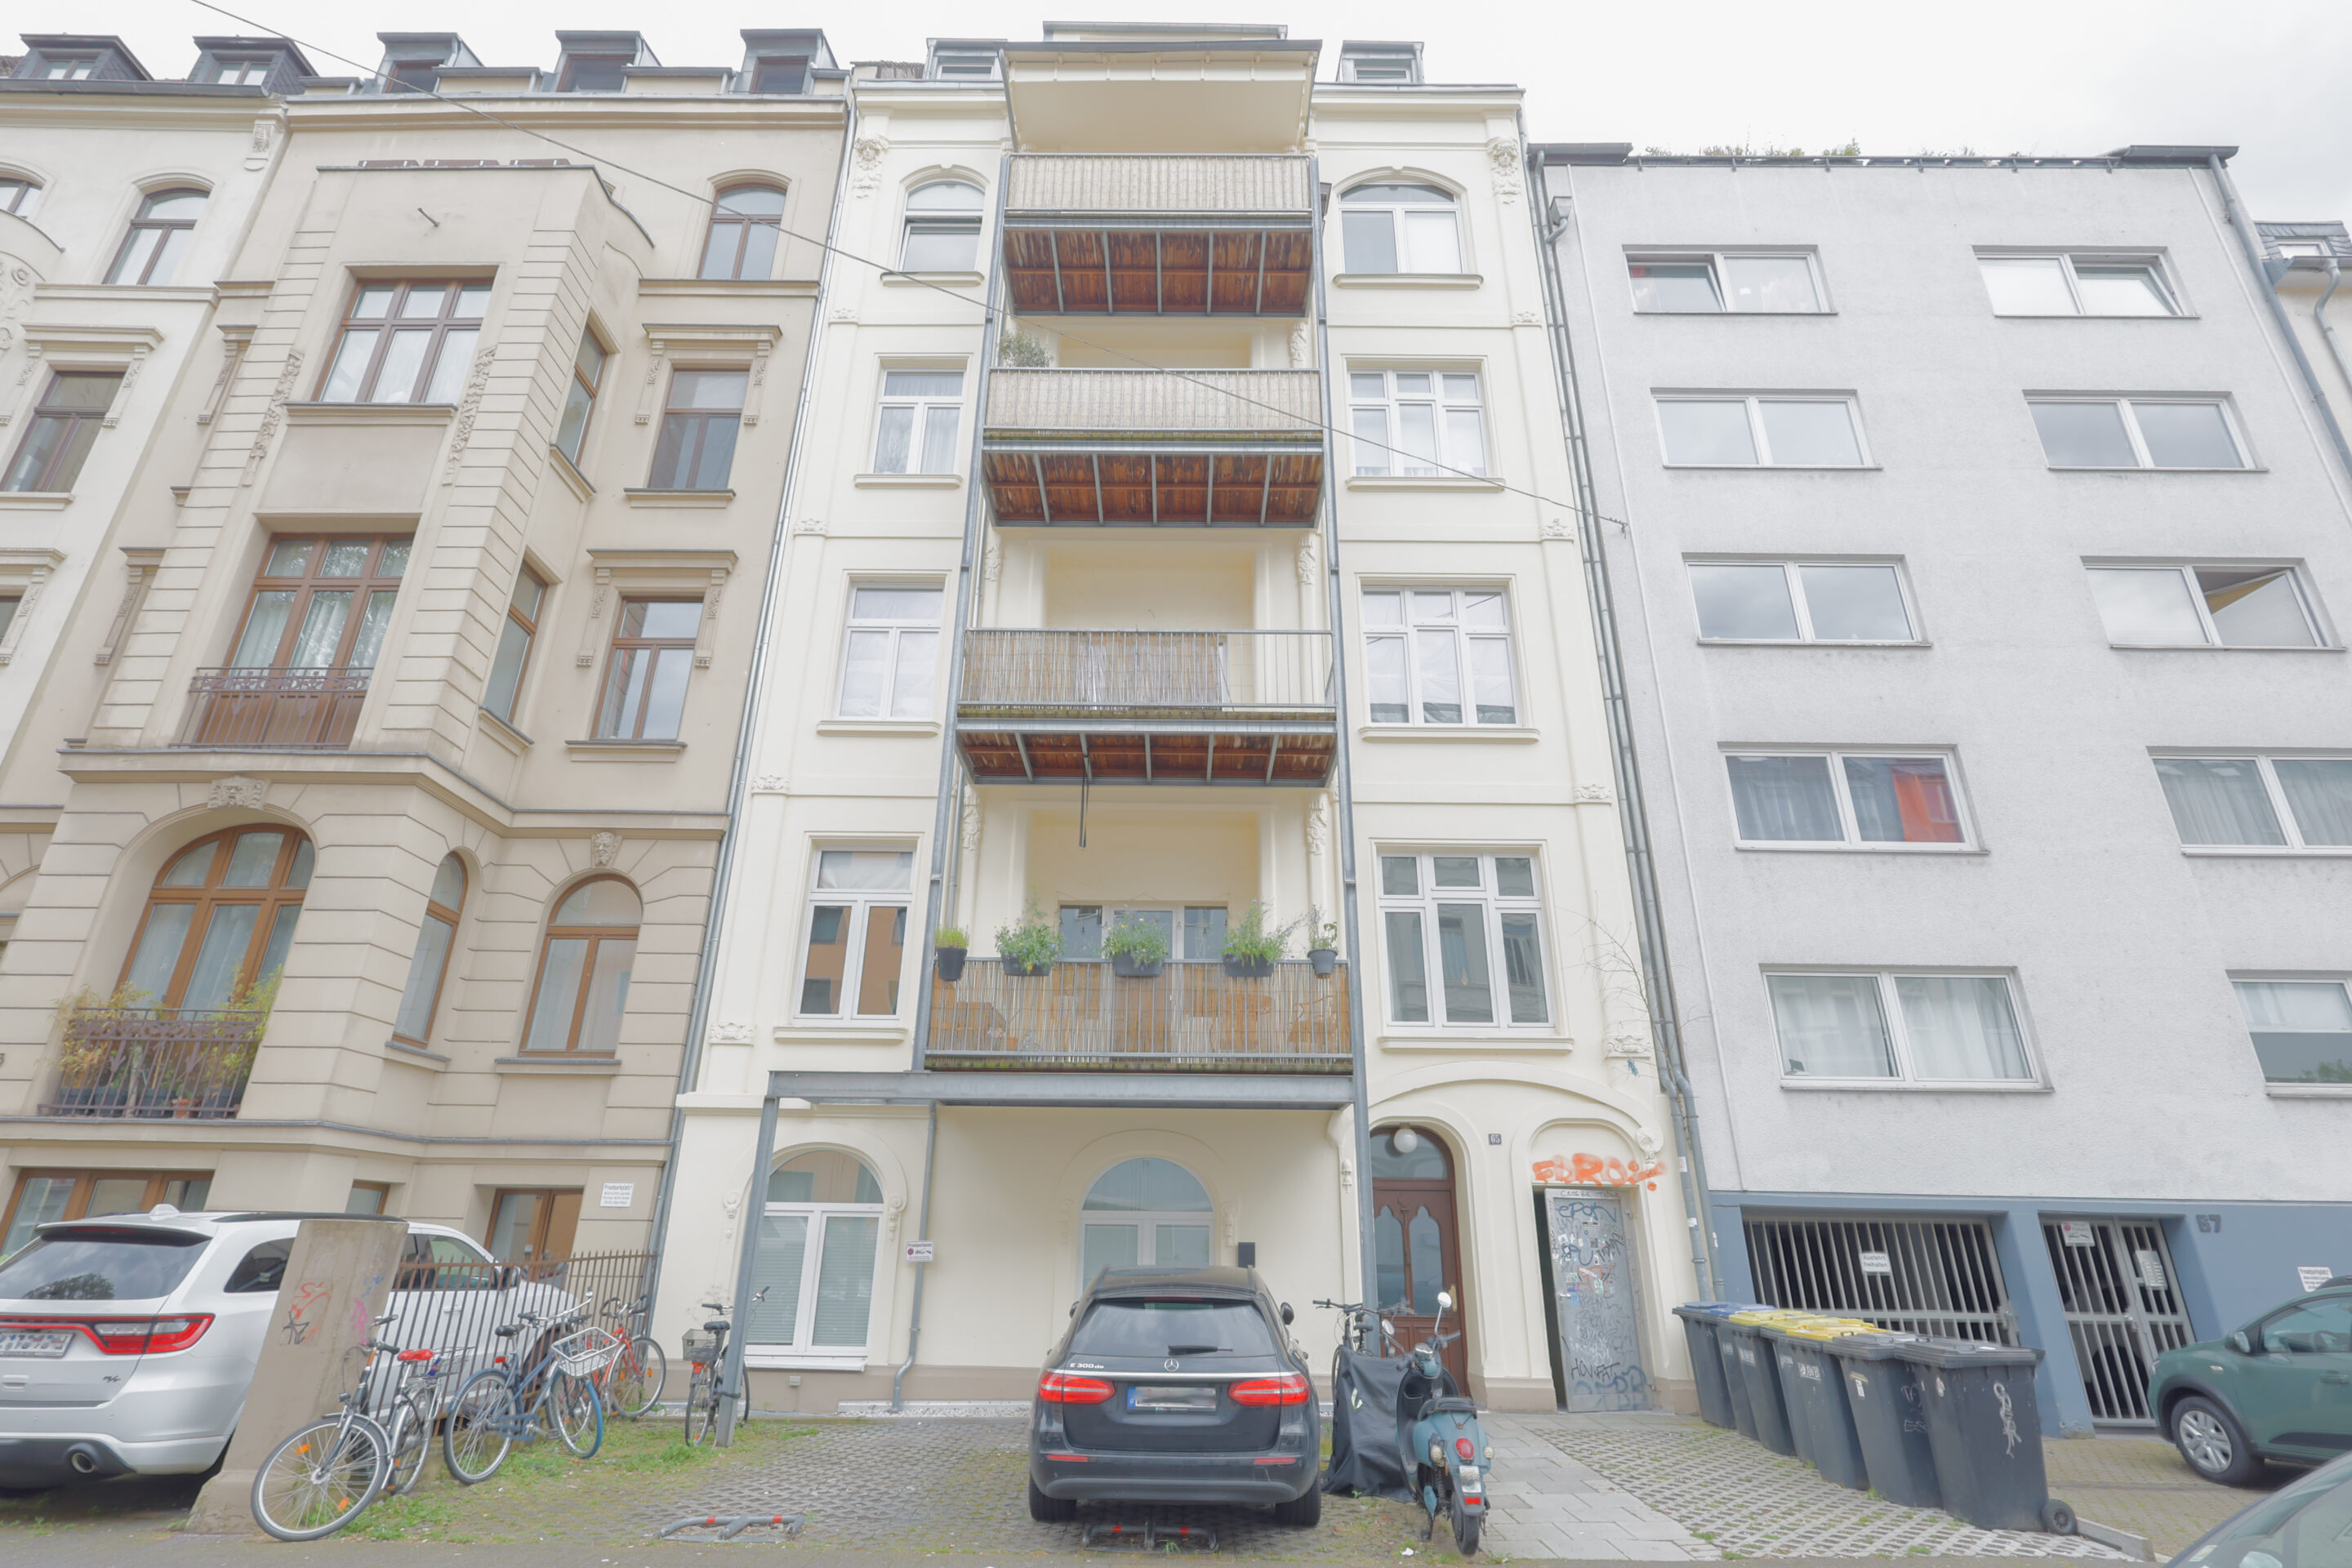 Entdecken Sie diese traumhafte Immobilie in Köln